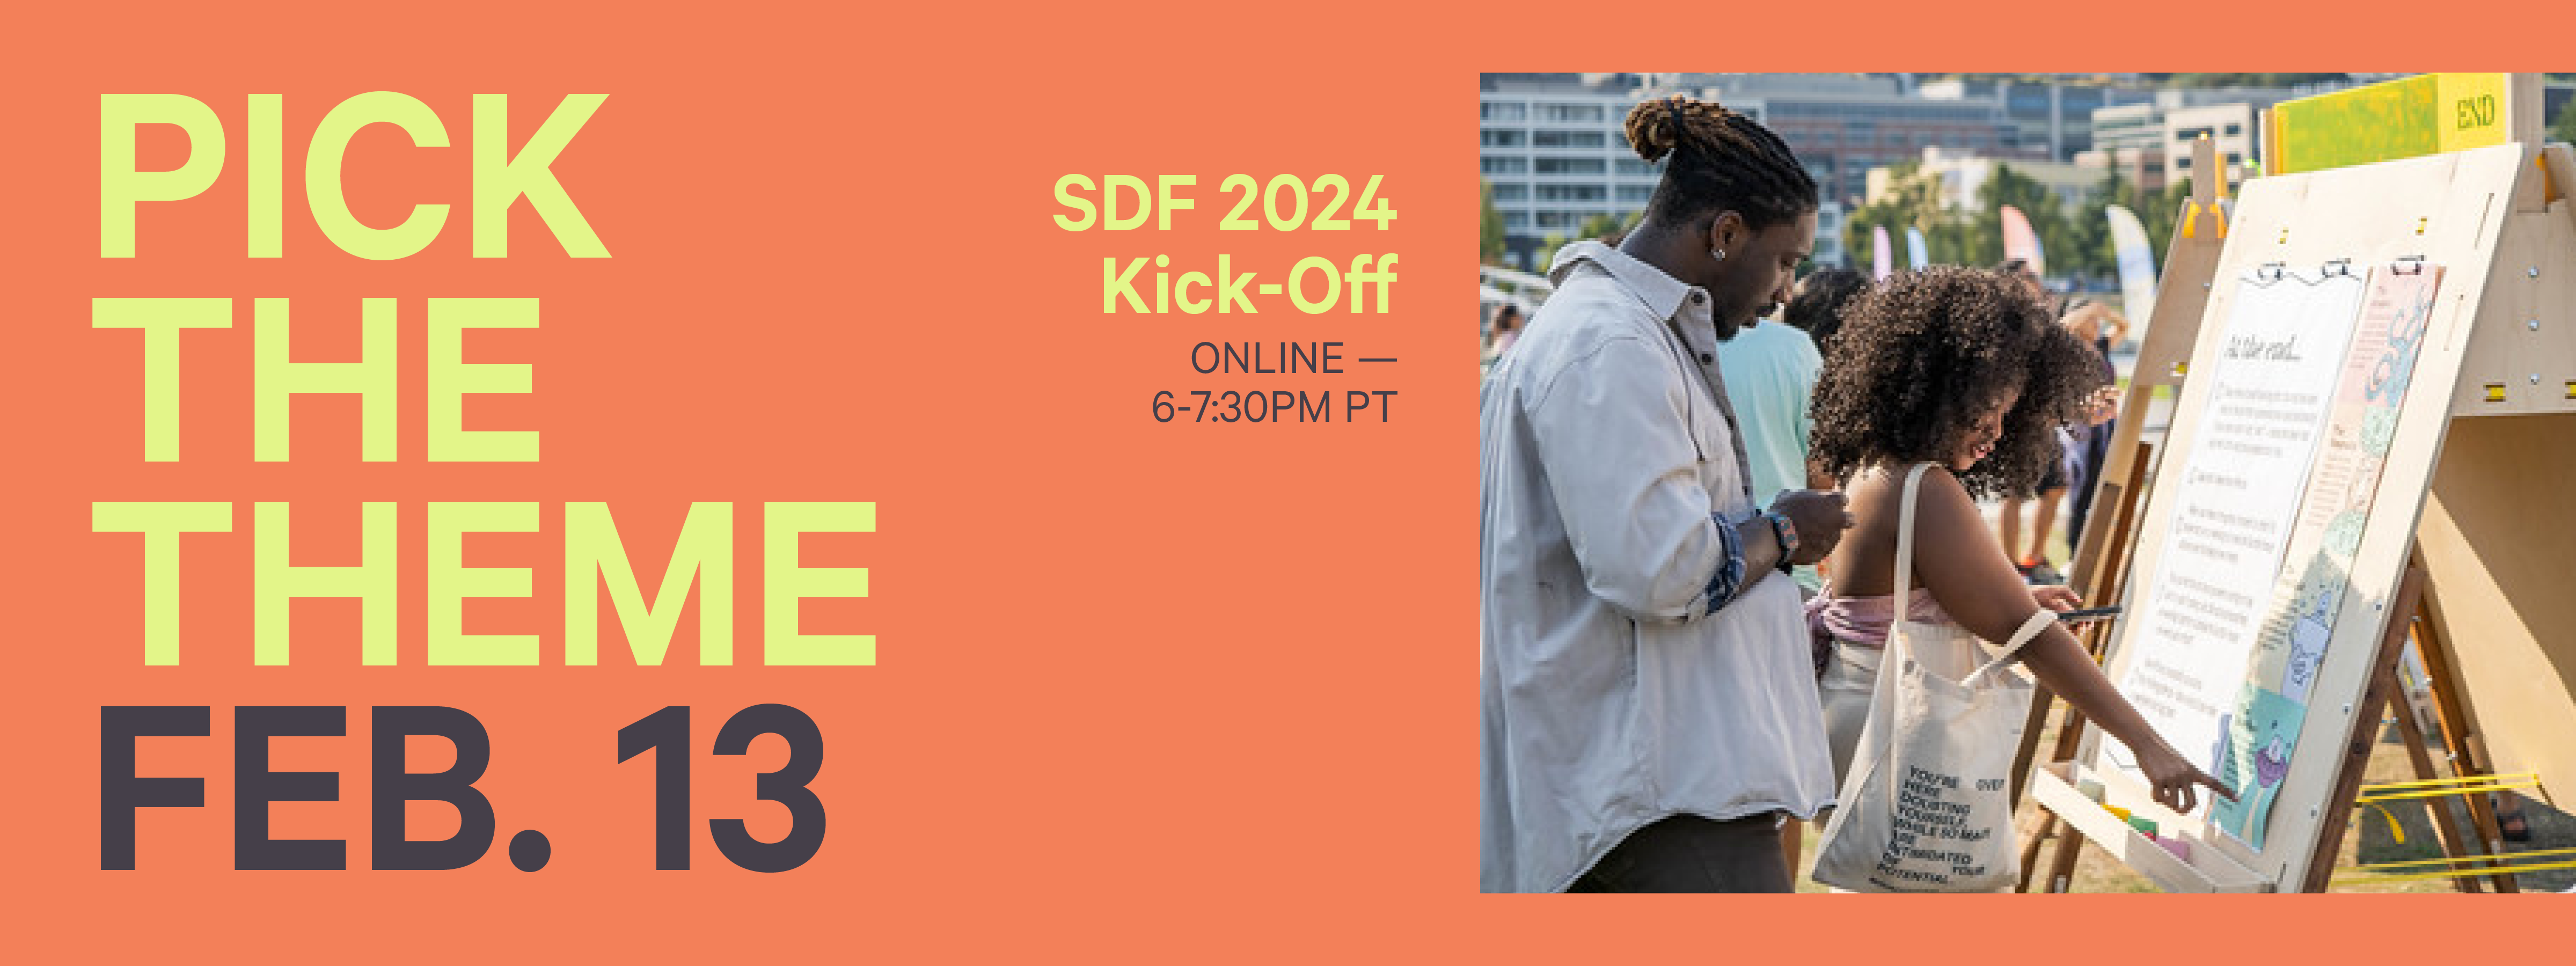 SDF 2024 KickOff Event Seattle Design Festival